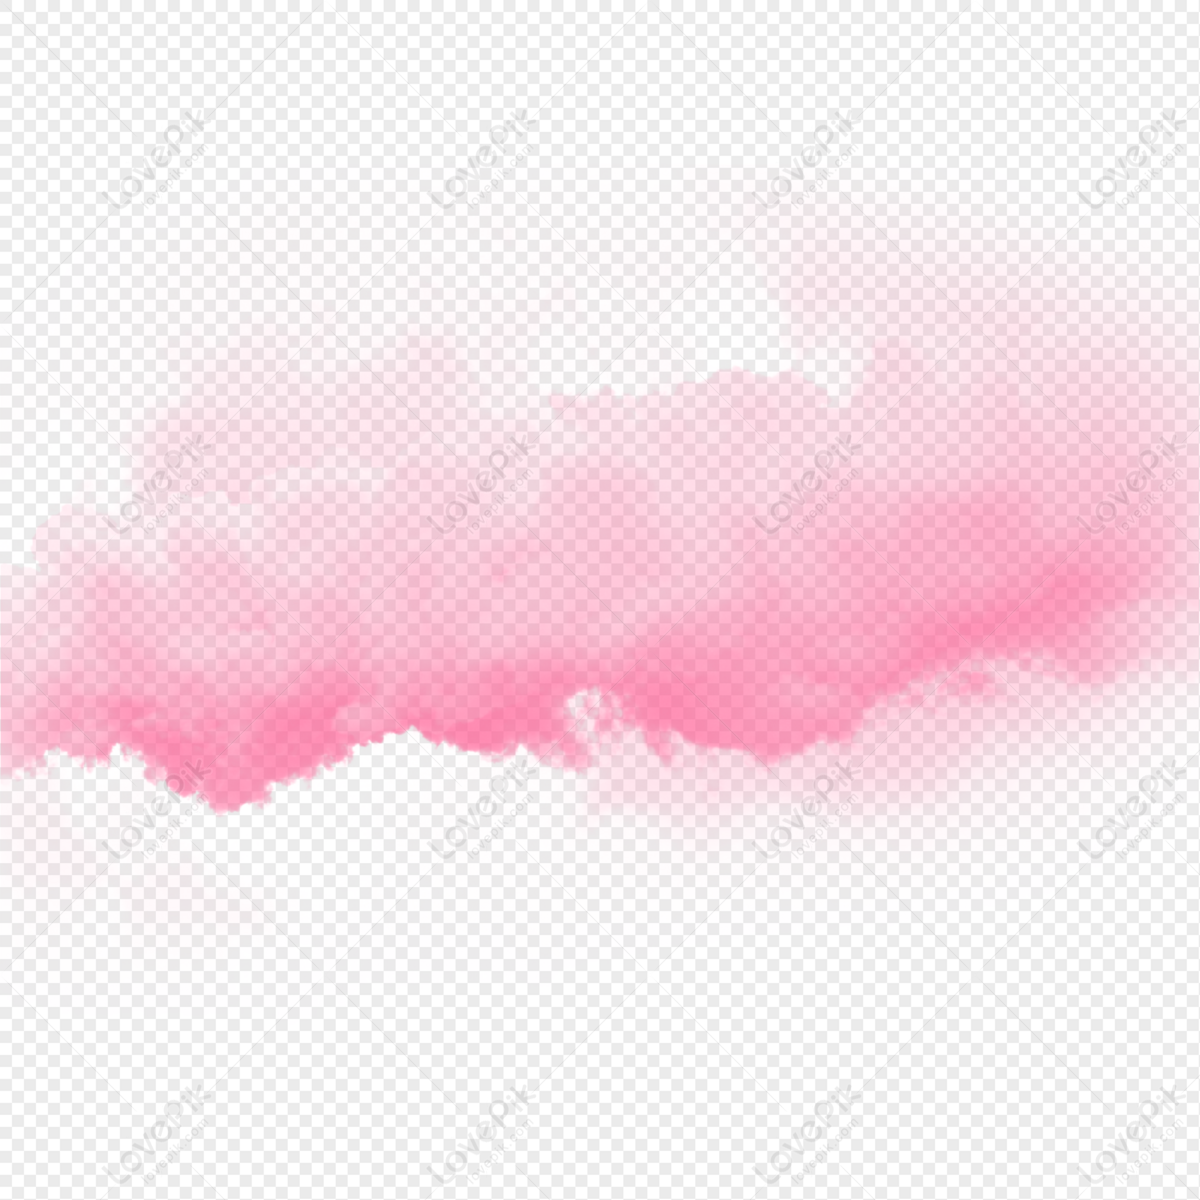 Hình nền đám mây hồng nổi sẽ đưa bạn vào một không gian tiên fairy đầy mơ mộng và lãng mạn. Hay khám phá các hình ảnh trong suốt và clipart khác của đám mây hồng để sáng tạo và trang trí những tác phẩm của riêng bạn.